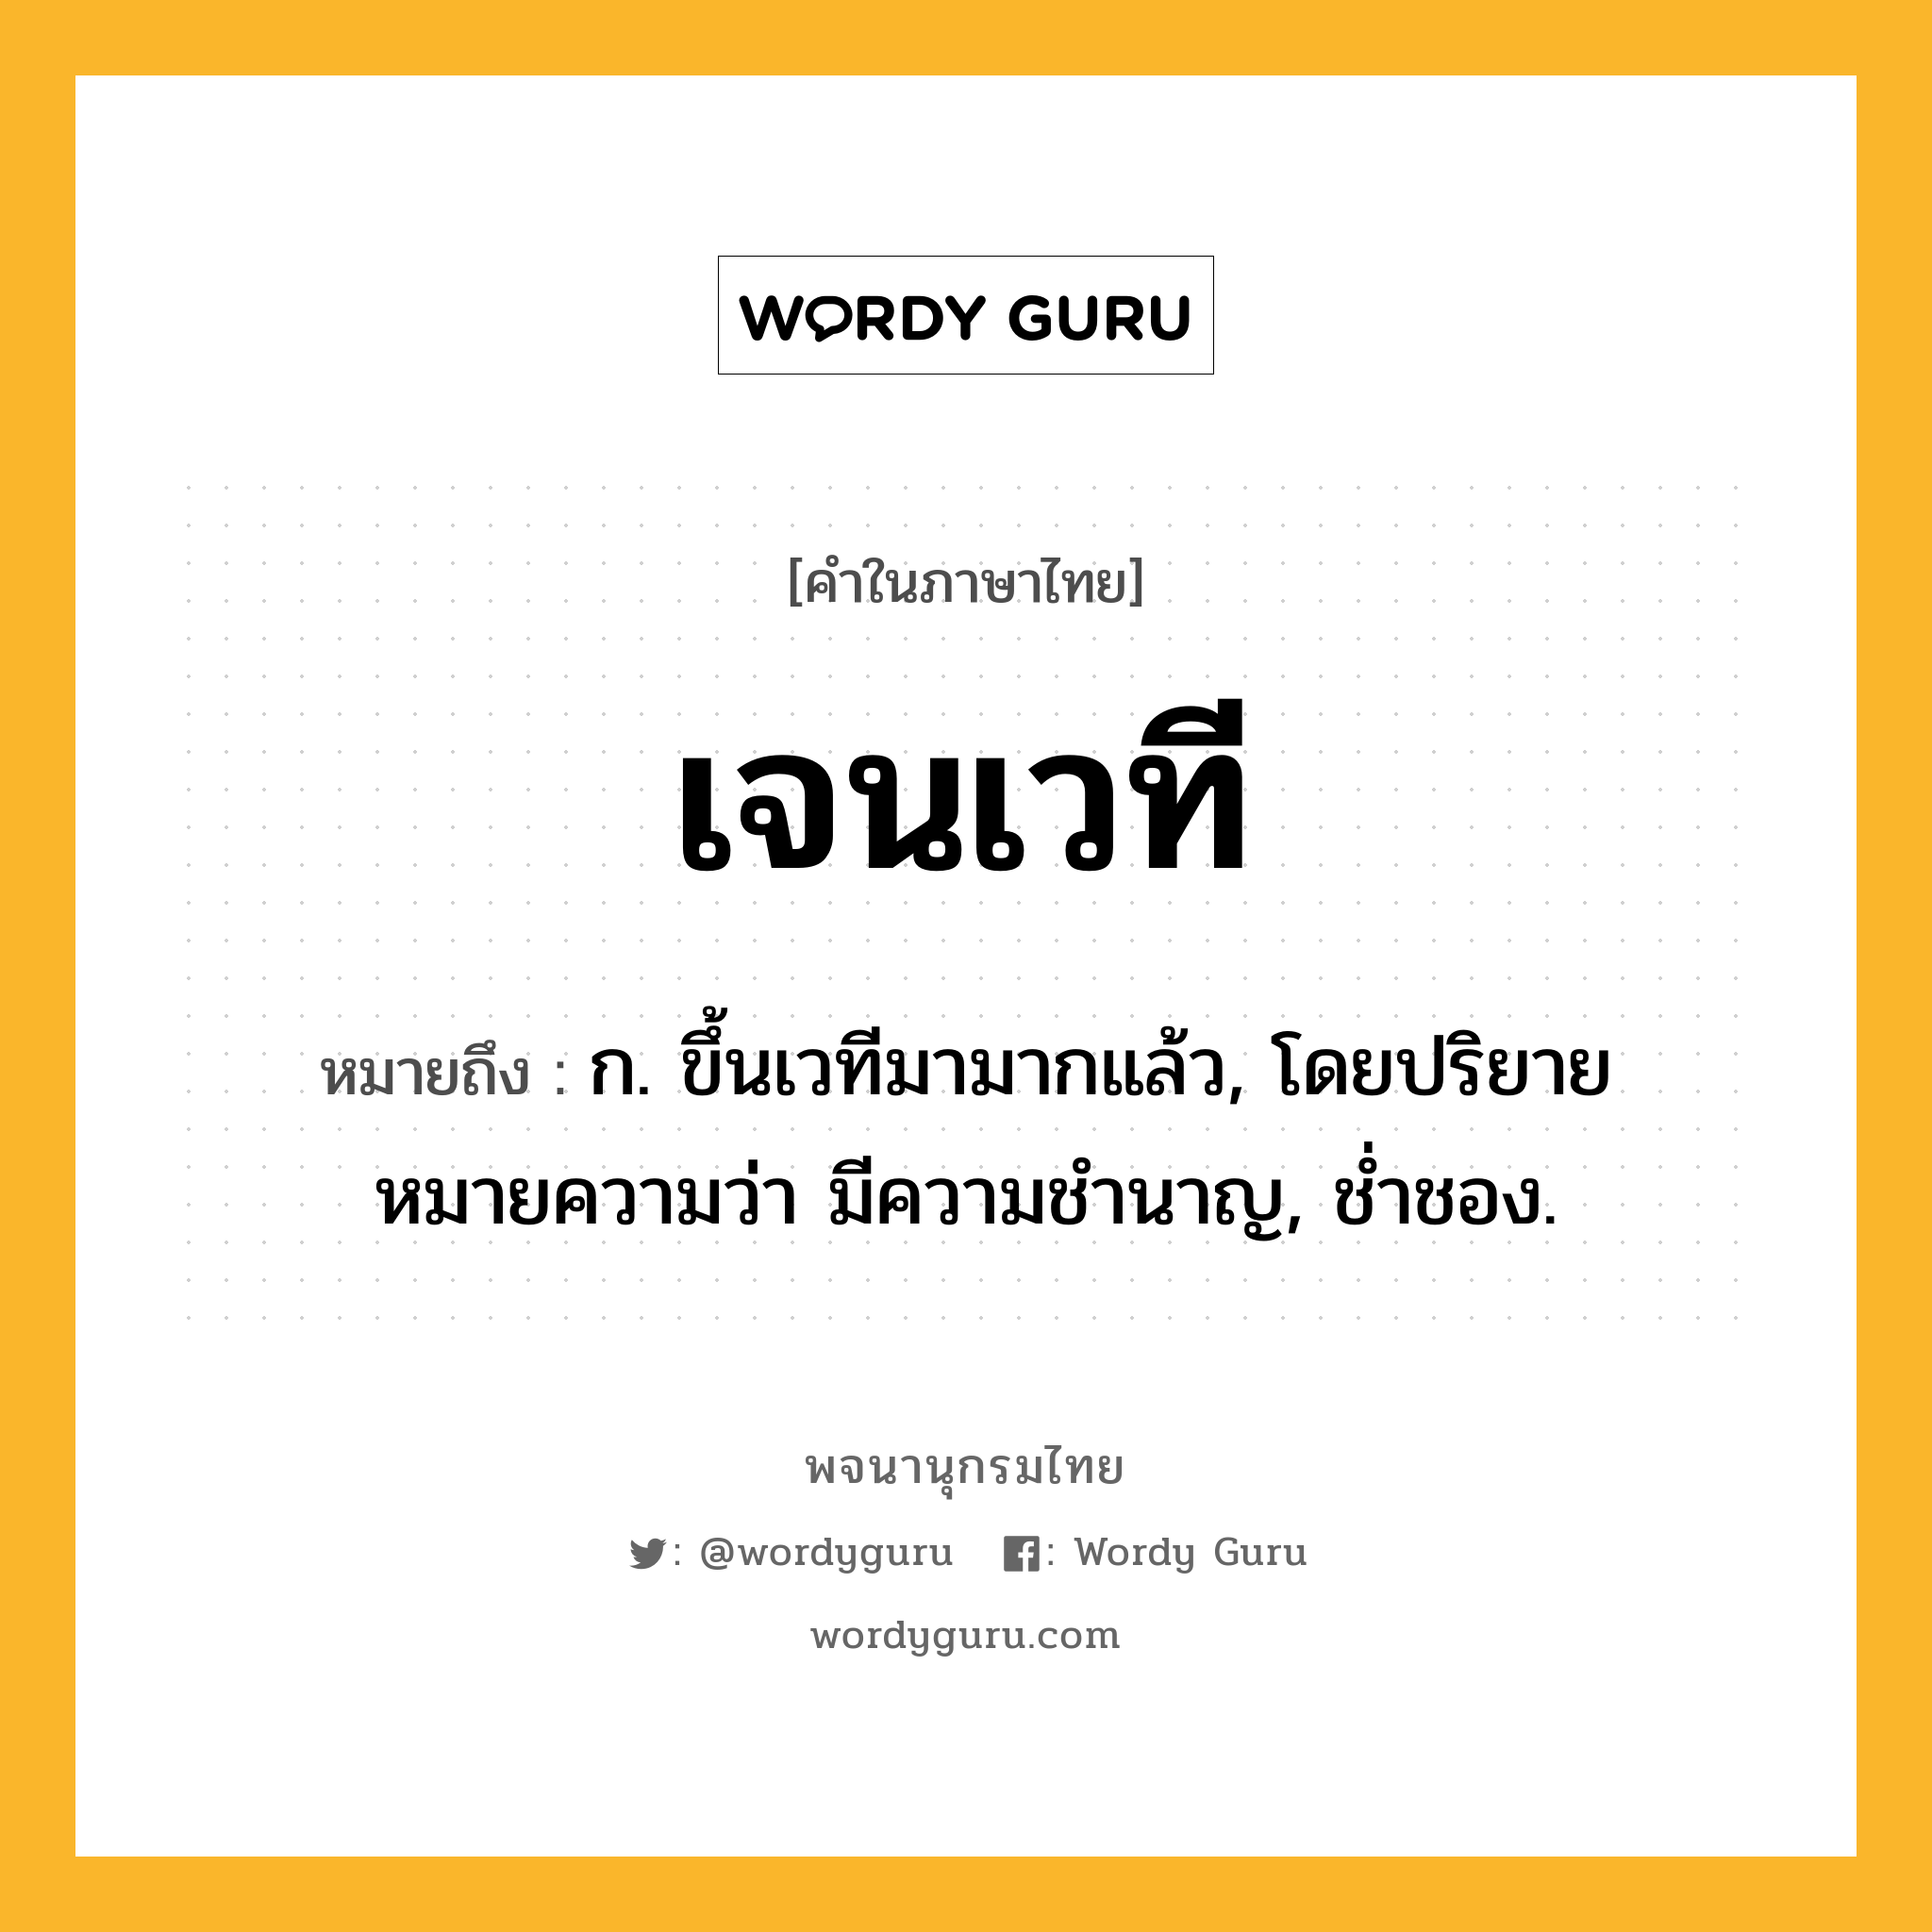 เจนเวที ความหมาย หมายถึงอะไร?, คำในภาษาไทย เจนเวที หมายถึง ก. ขึ้นเวทีมามากแล้ว, โดยปริยายหมายความว่า มีความชำนาญ, ช่ำชอง.